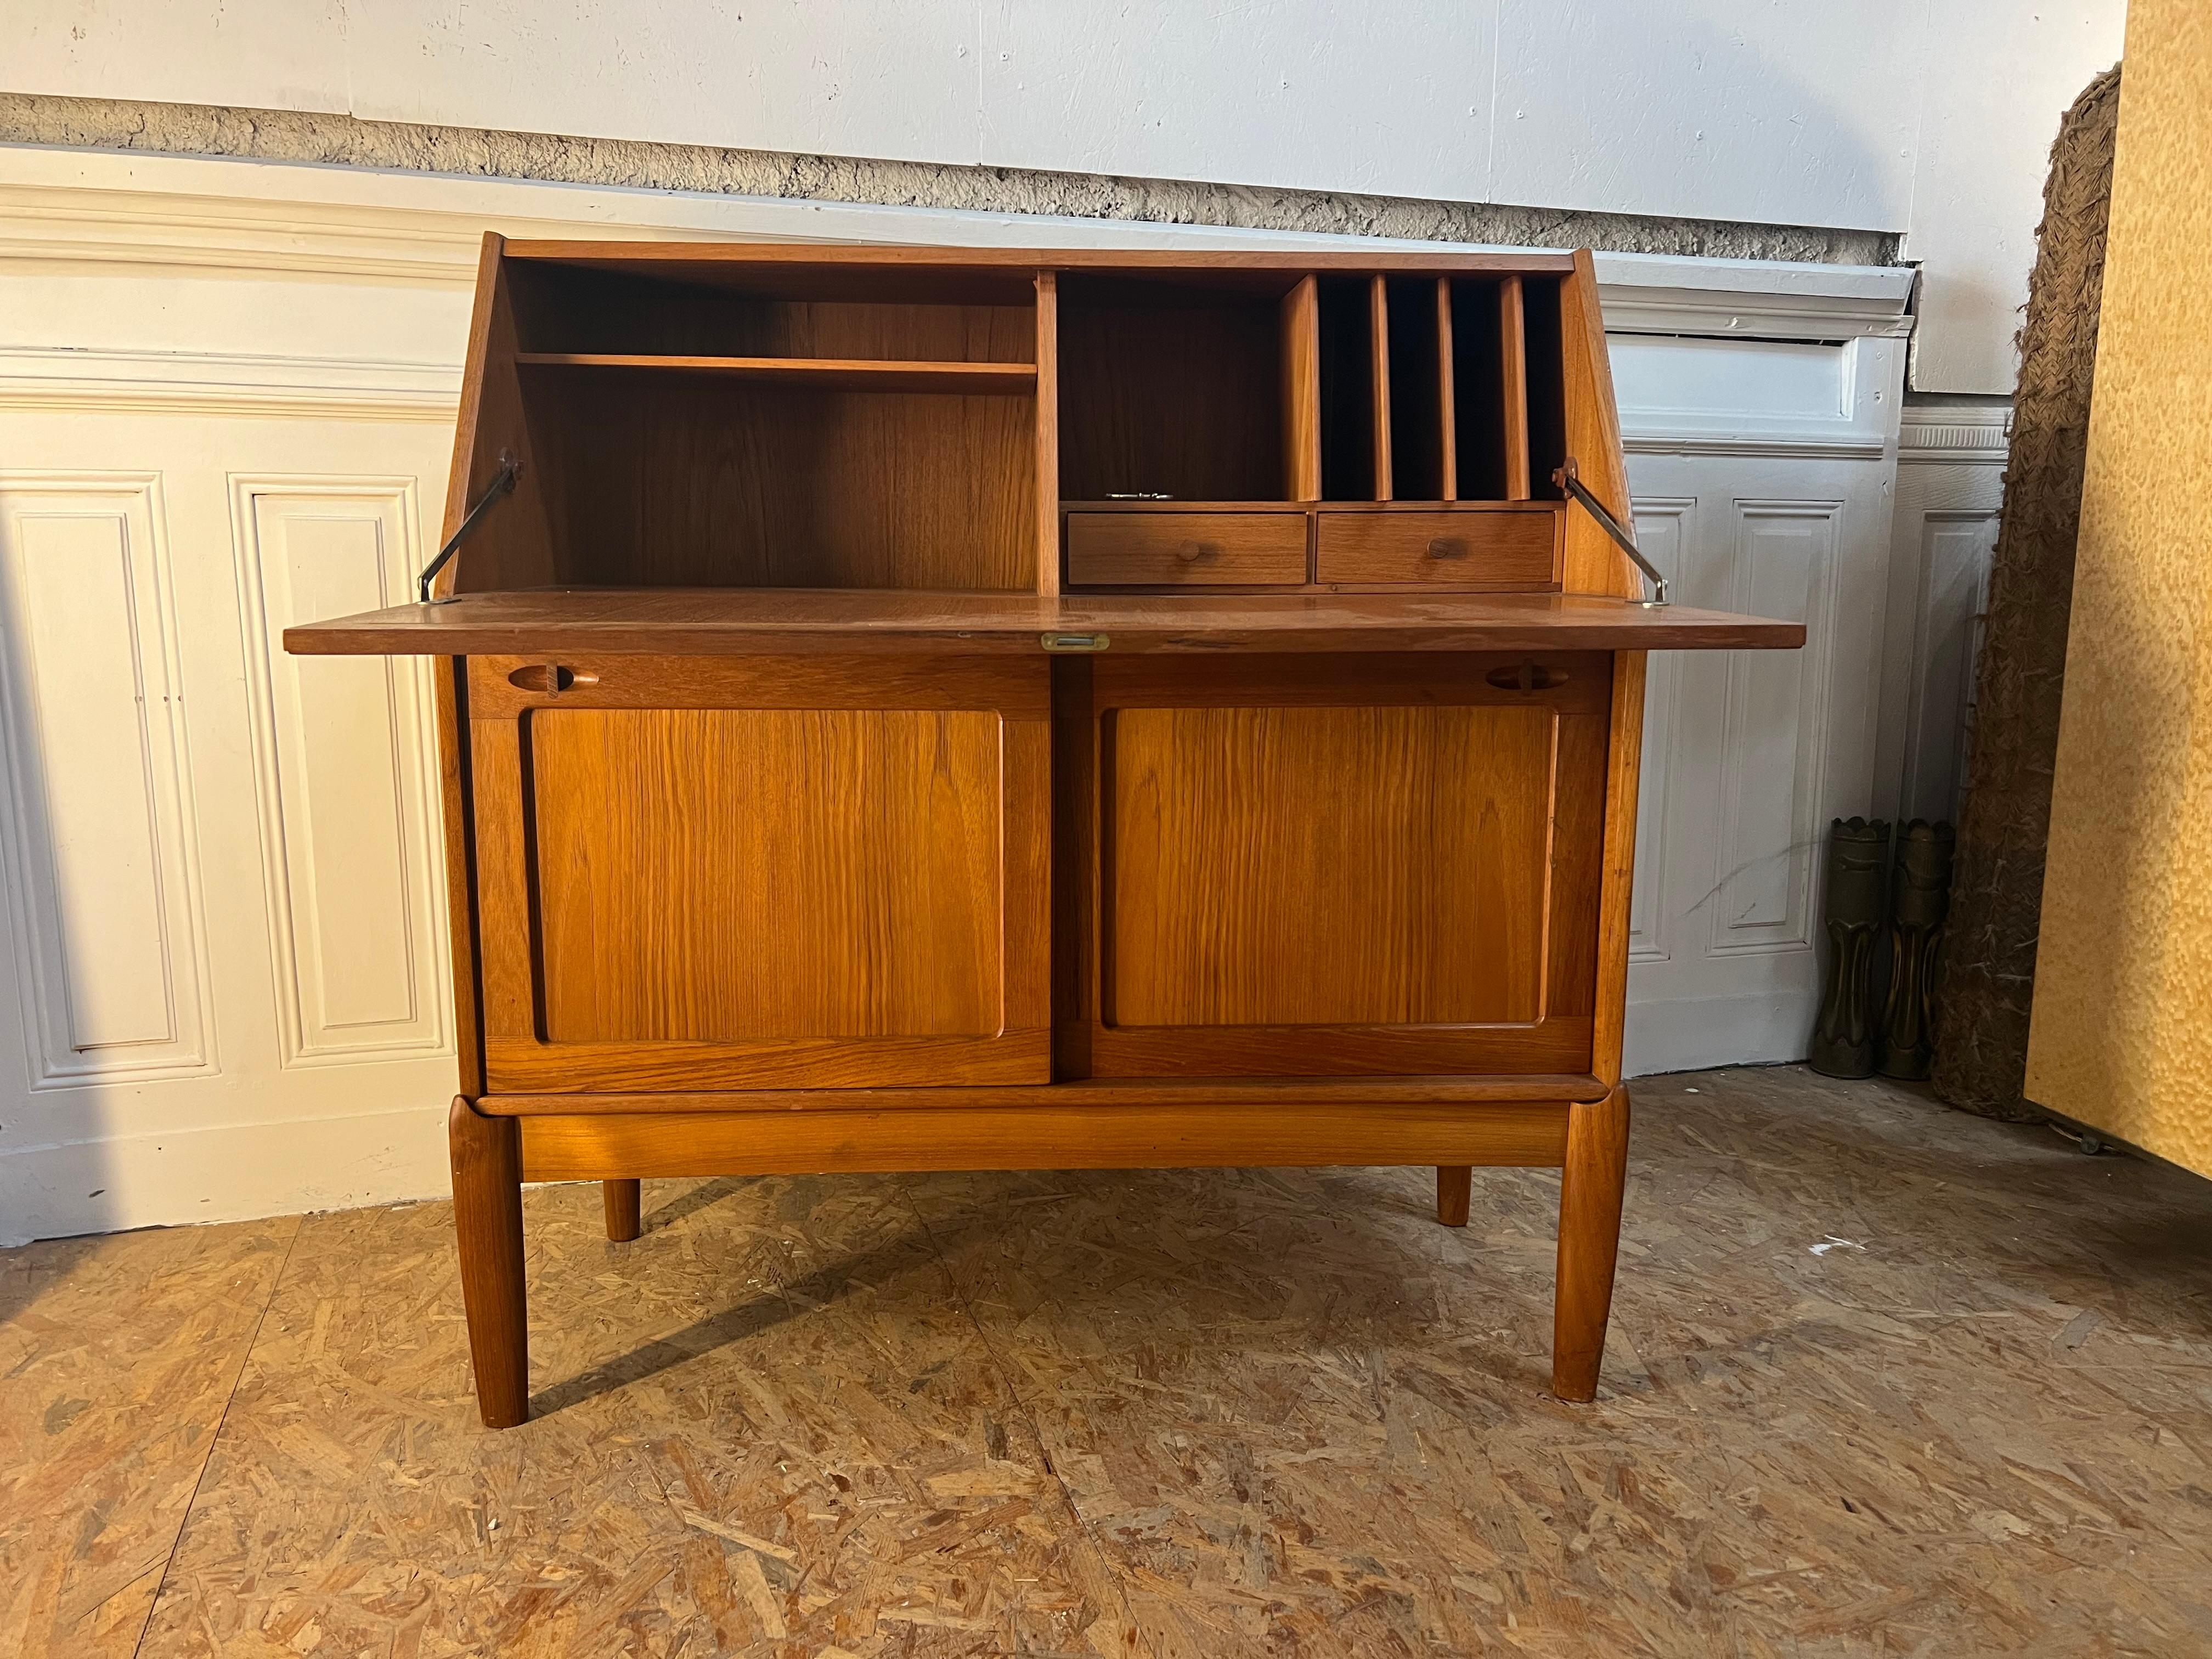  

Ce magnifique bureau compact danois aux finitions de haute qualité a été conçu par H.W. Klein pour Bramin dans les années 1960. Il est doté d'une surface d'écriture extensible. La structure en bois de teck présente un aspect chaleureux.

